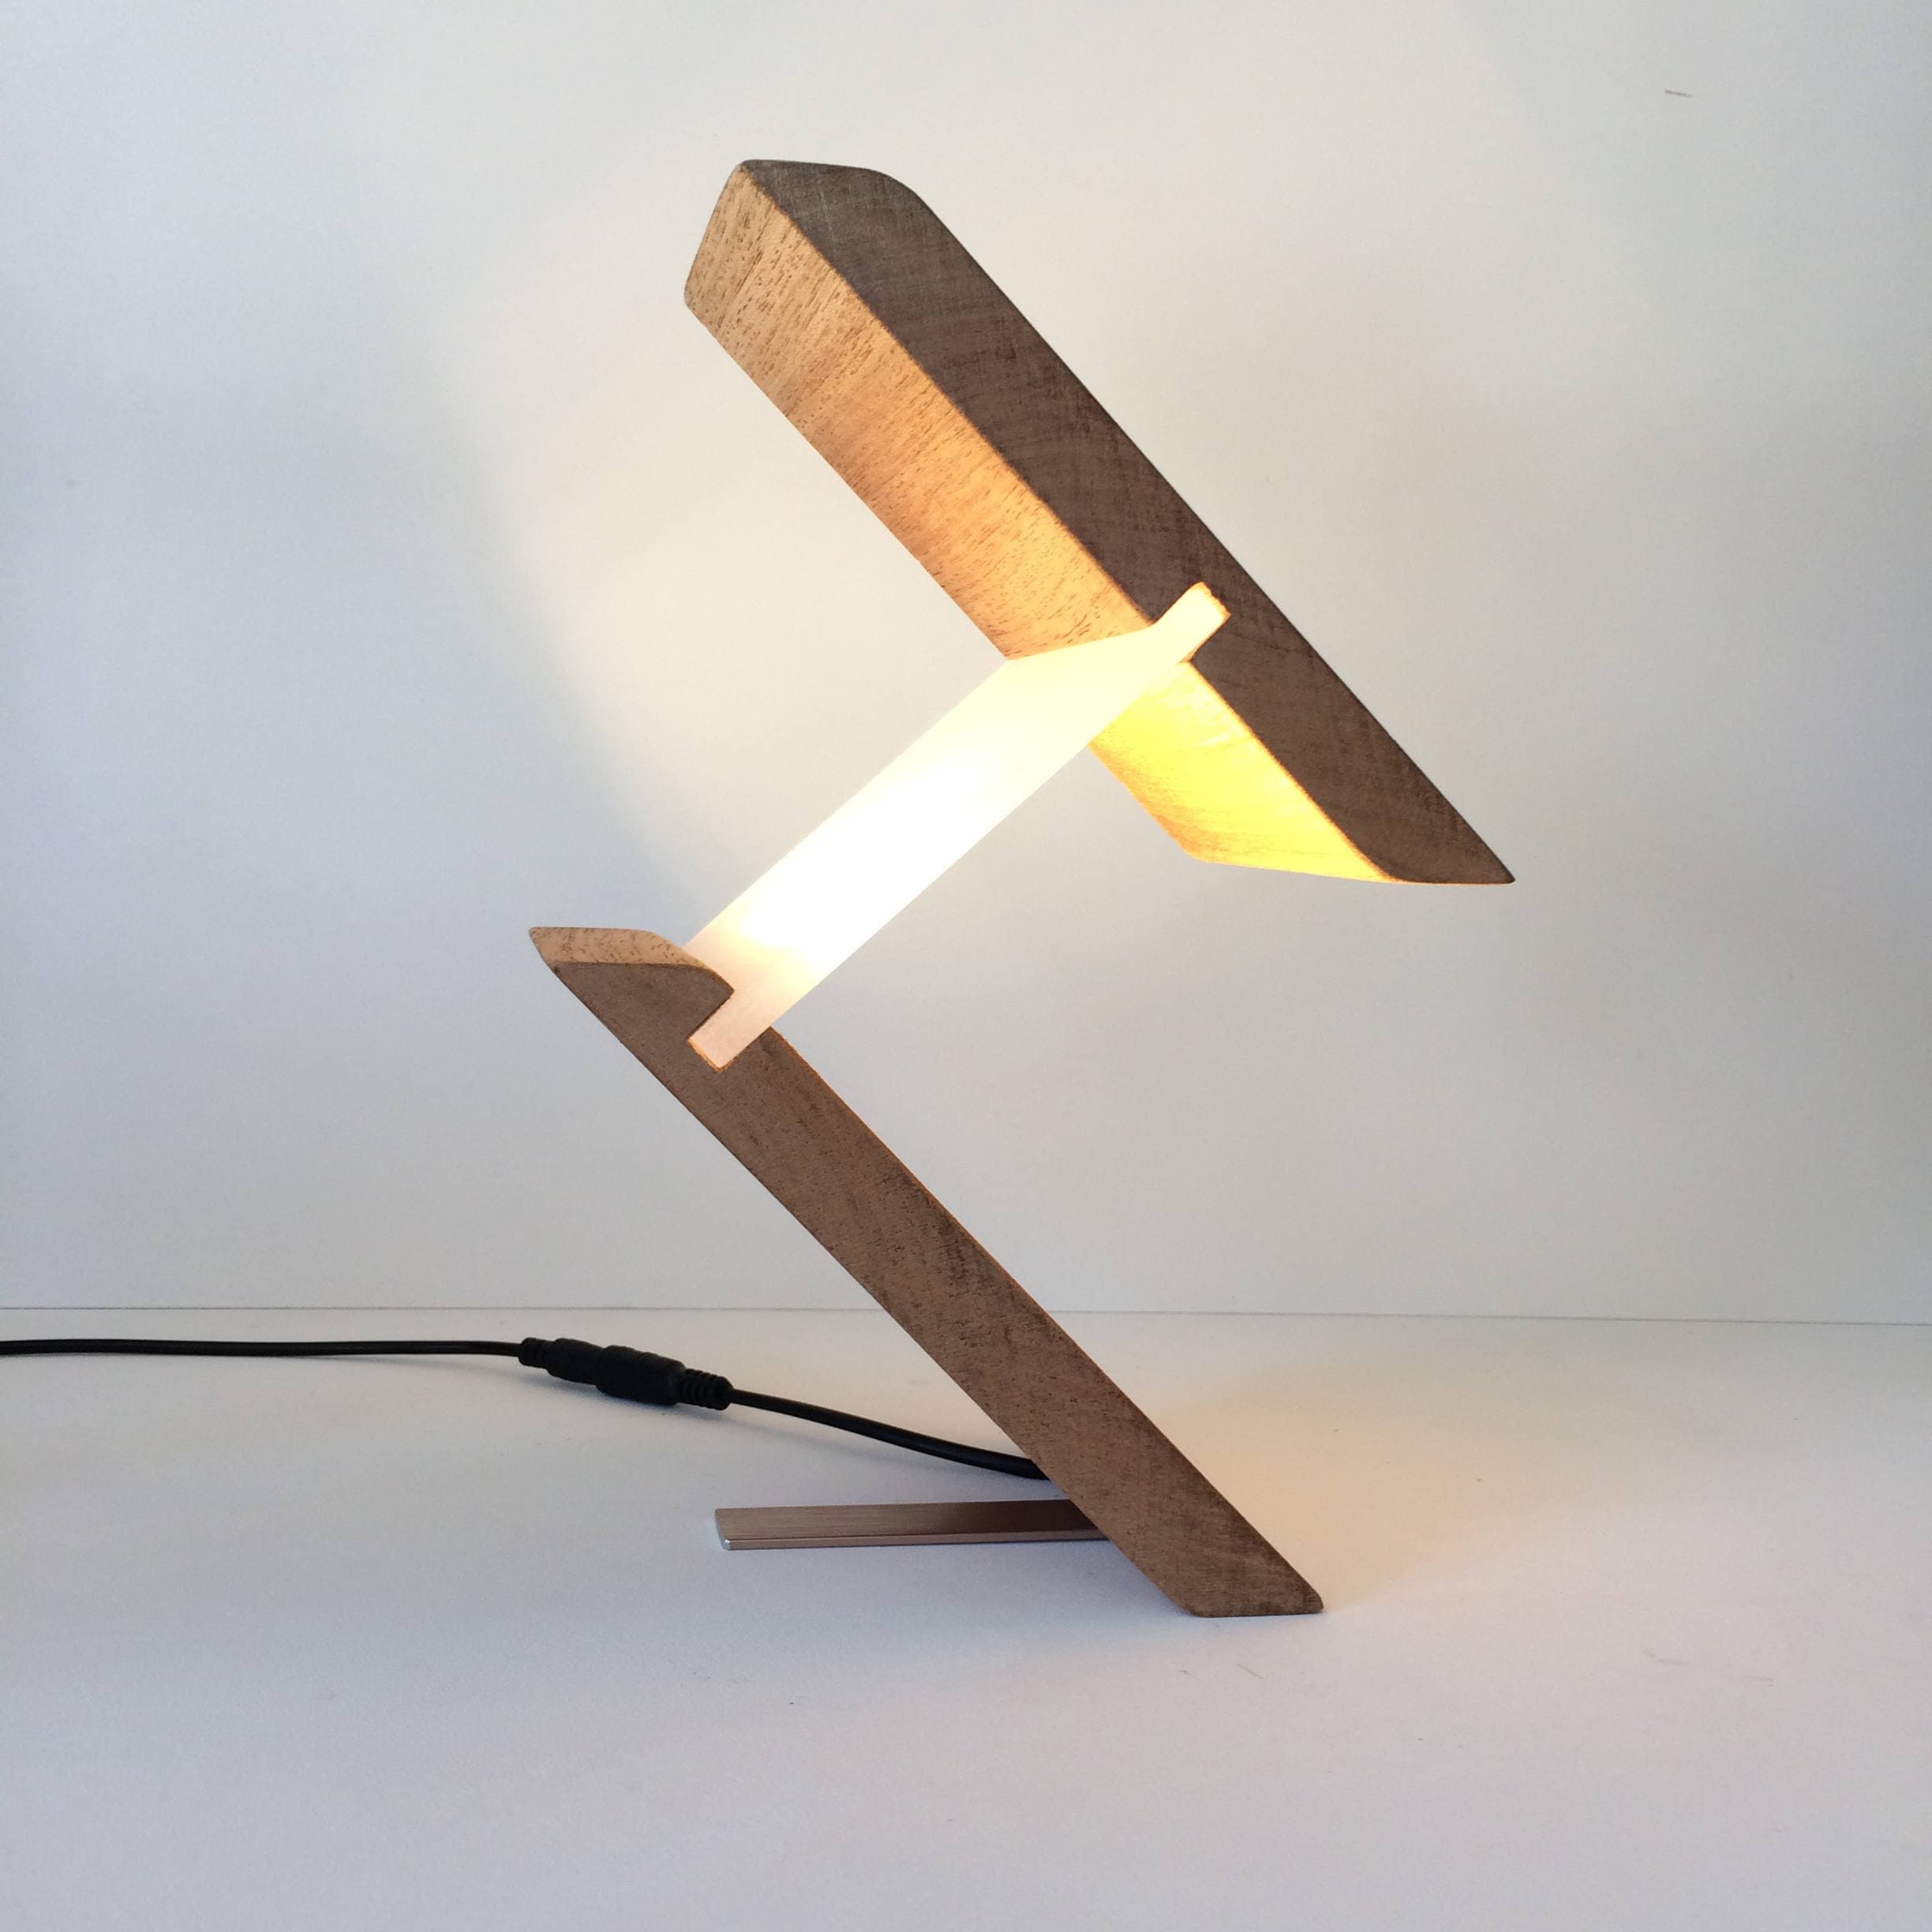 Lamp, Lamps, Table Lamp, Desk Lamp, Modern Lighting, Unusual Gift, Gift